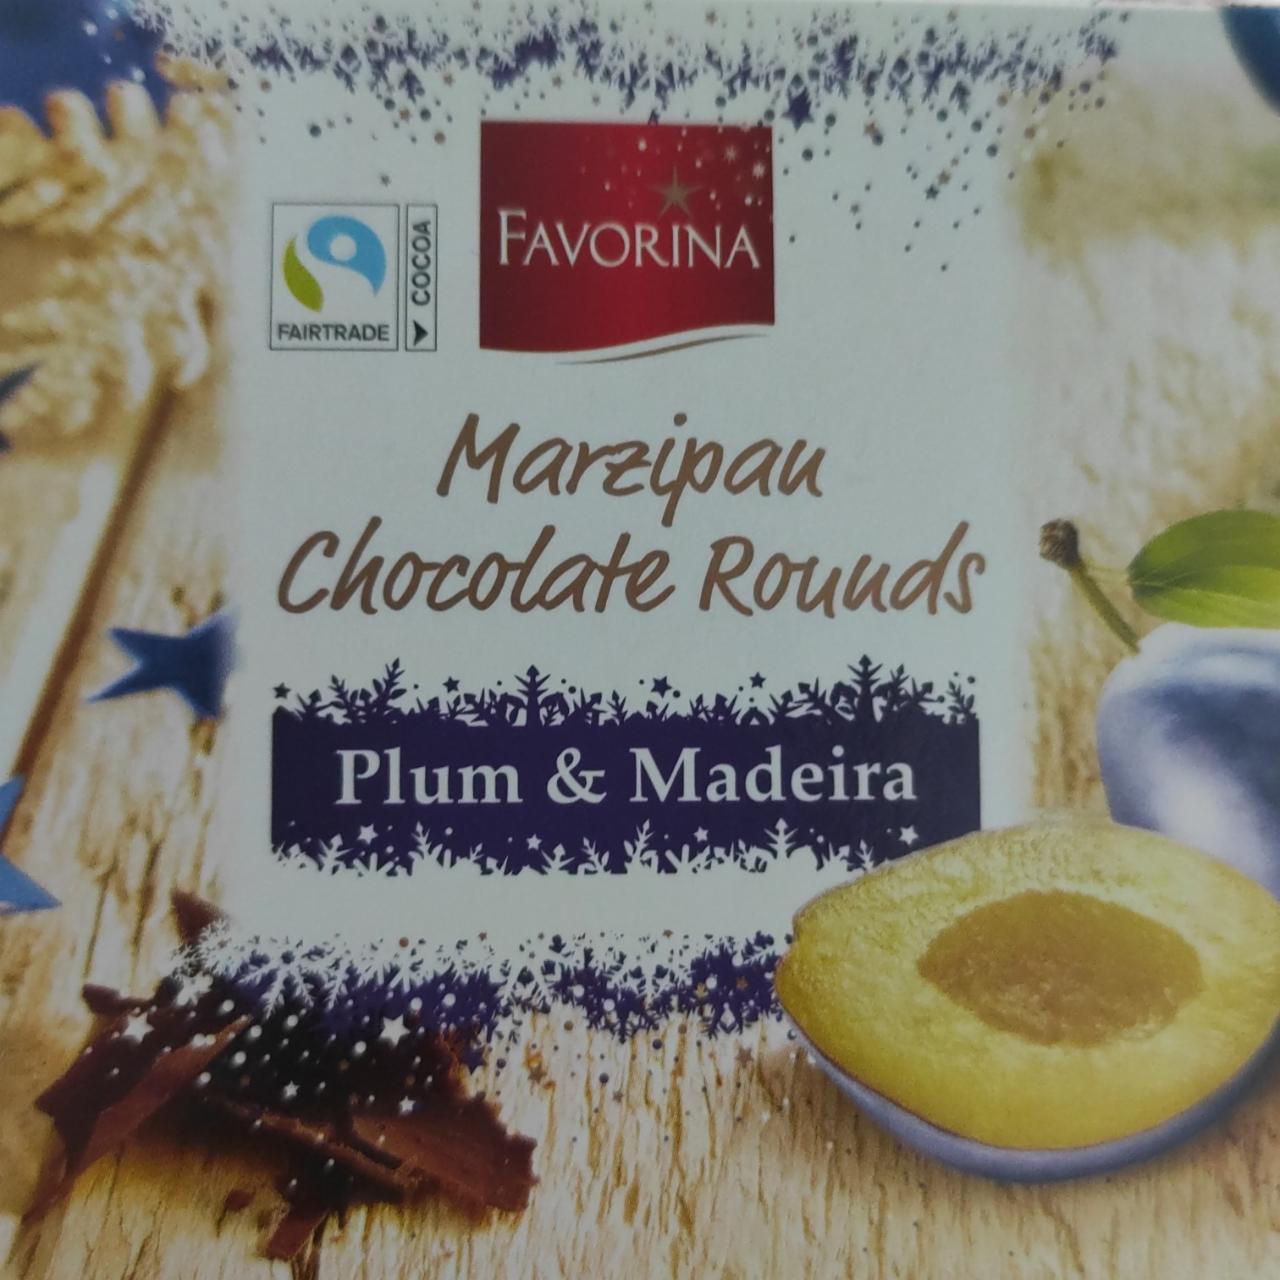 Fotografie - Marzipan Chocolate Rounds Plum & Madeira Favorina